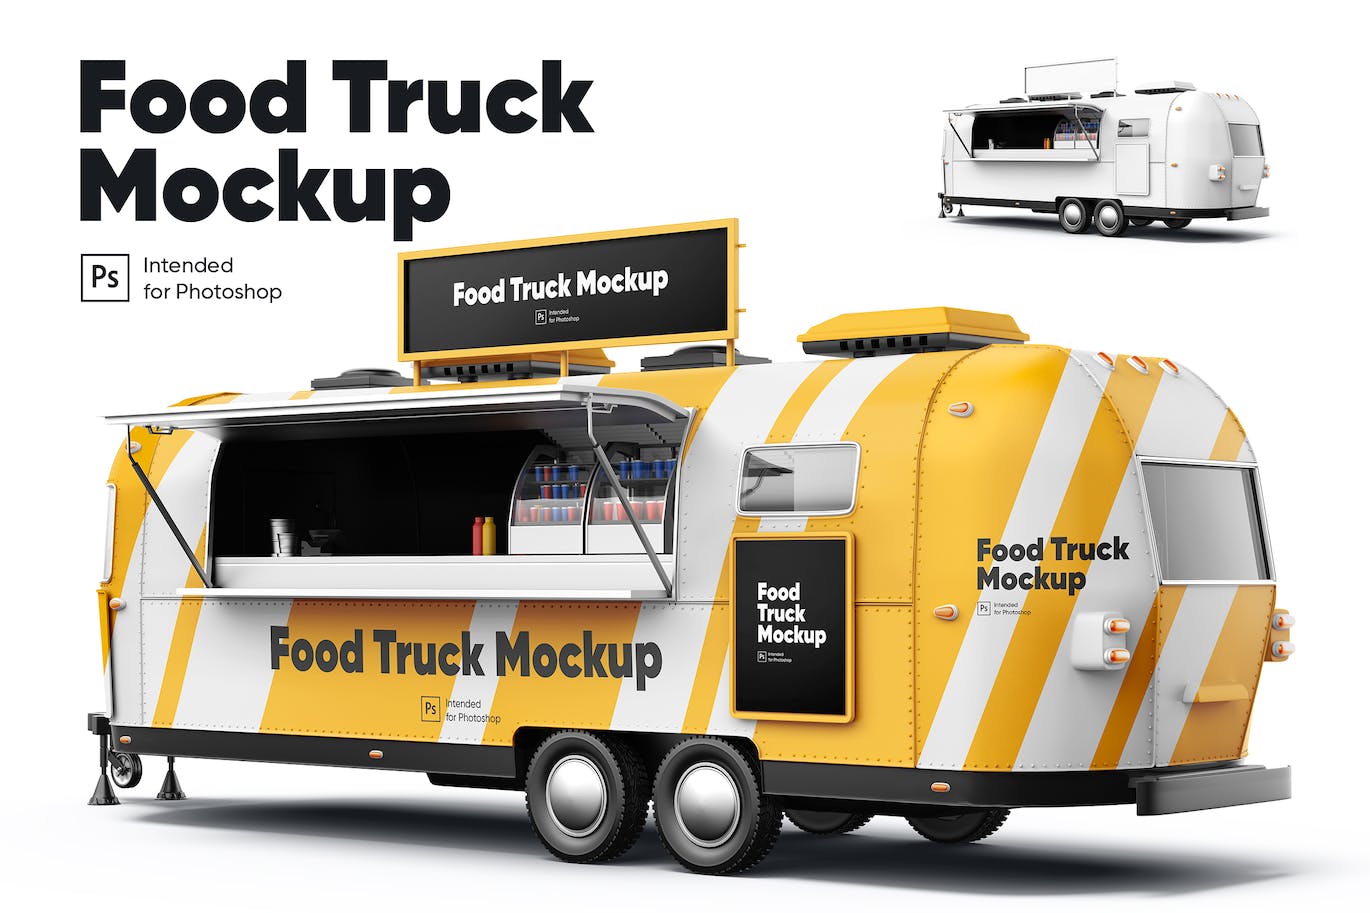 食品流动卡车车身广告设计样机 (PSD)